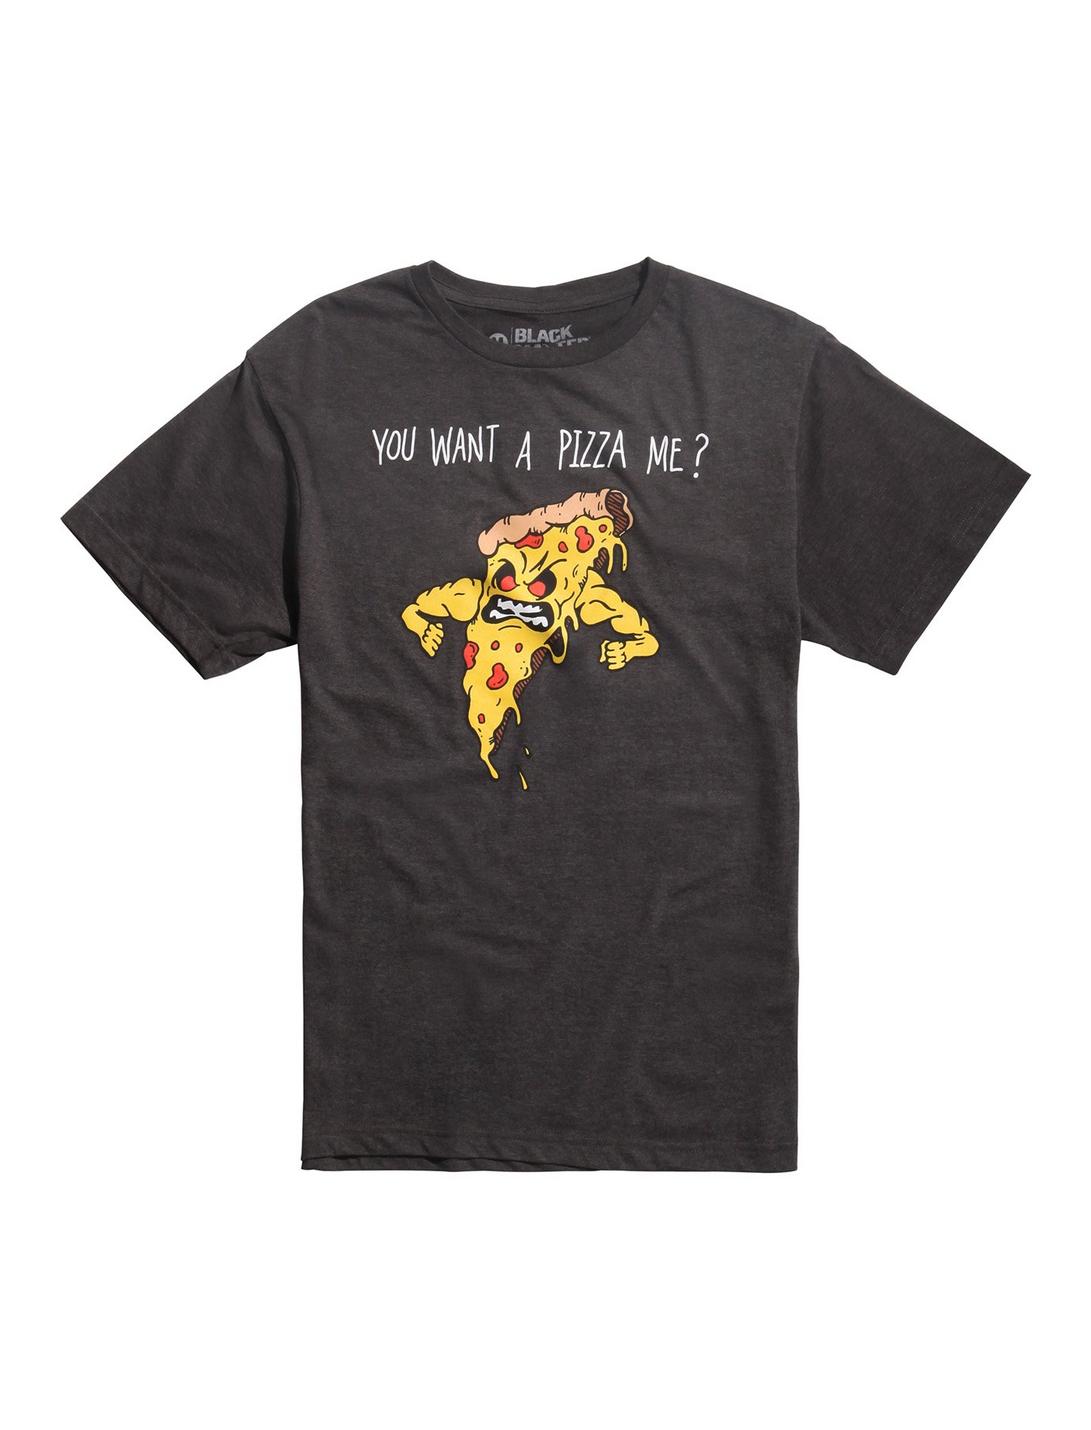 You Want A Pizza Me? T-Shirt, GREY, hi-res